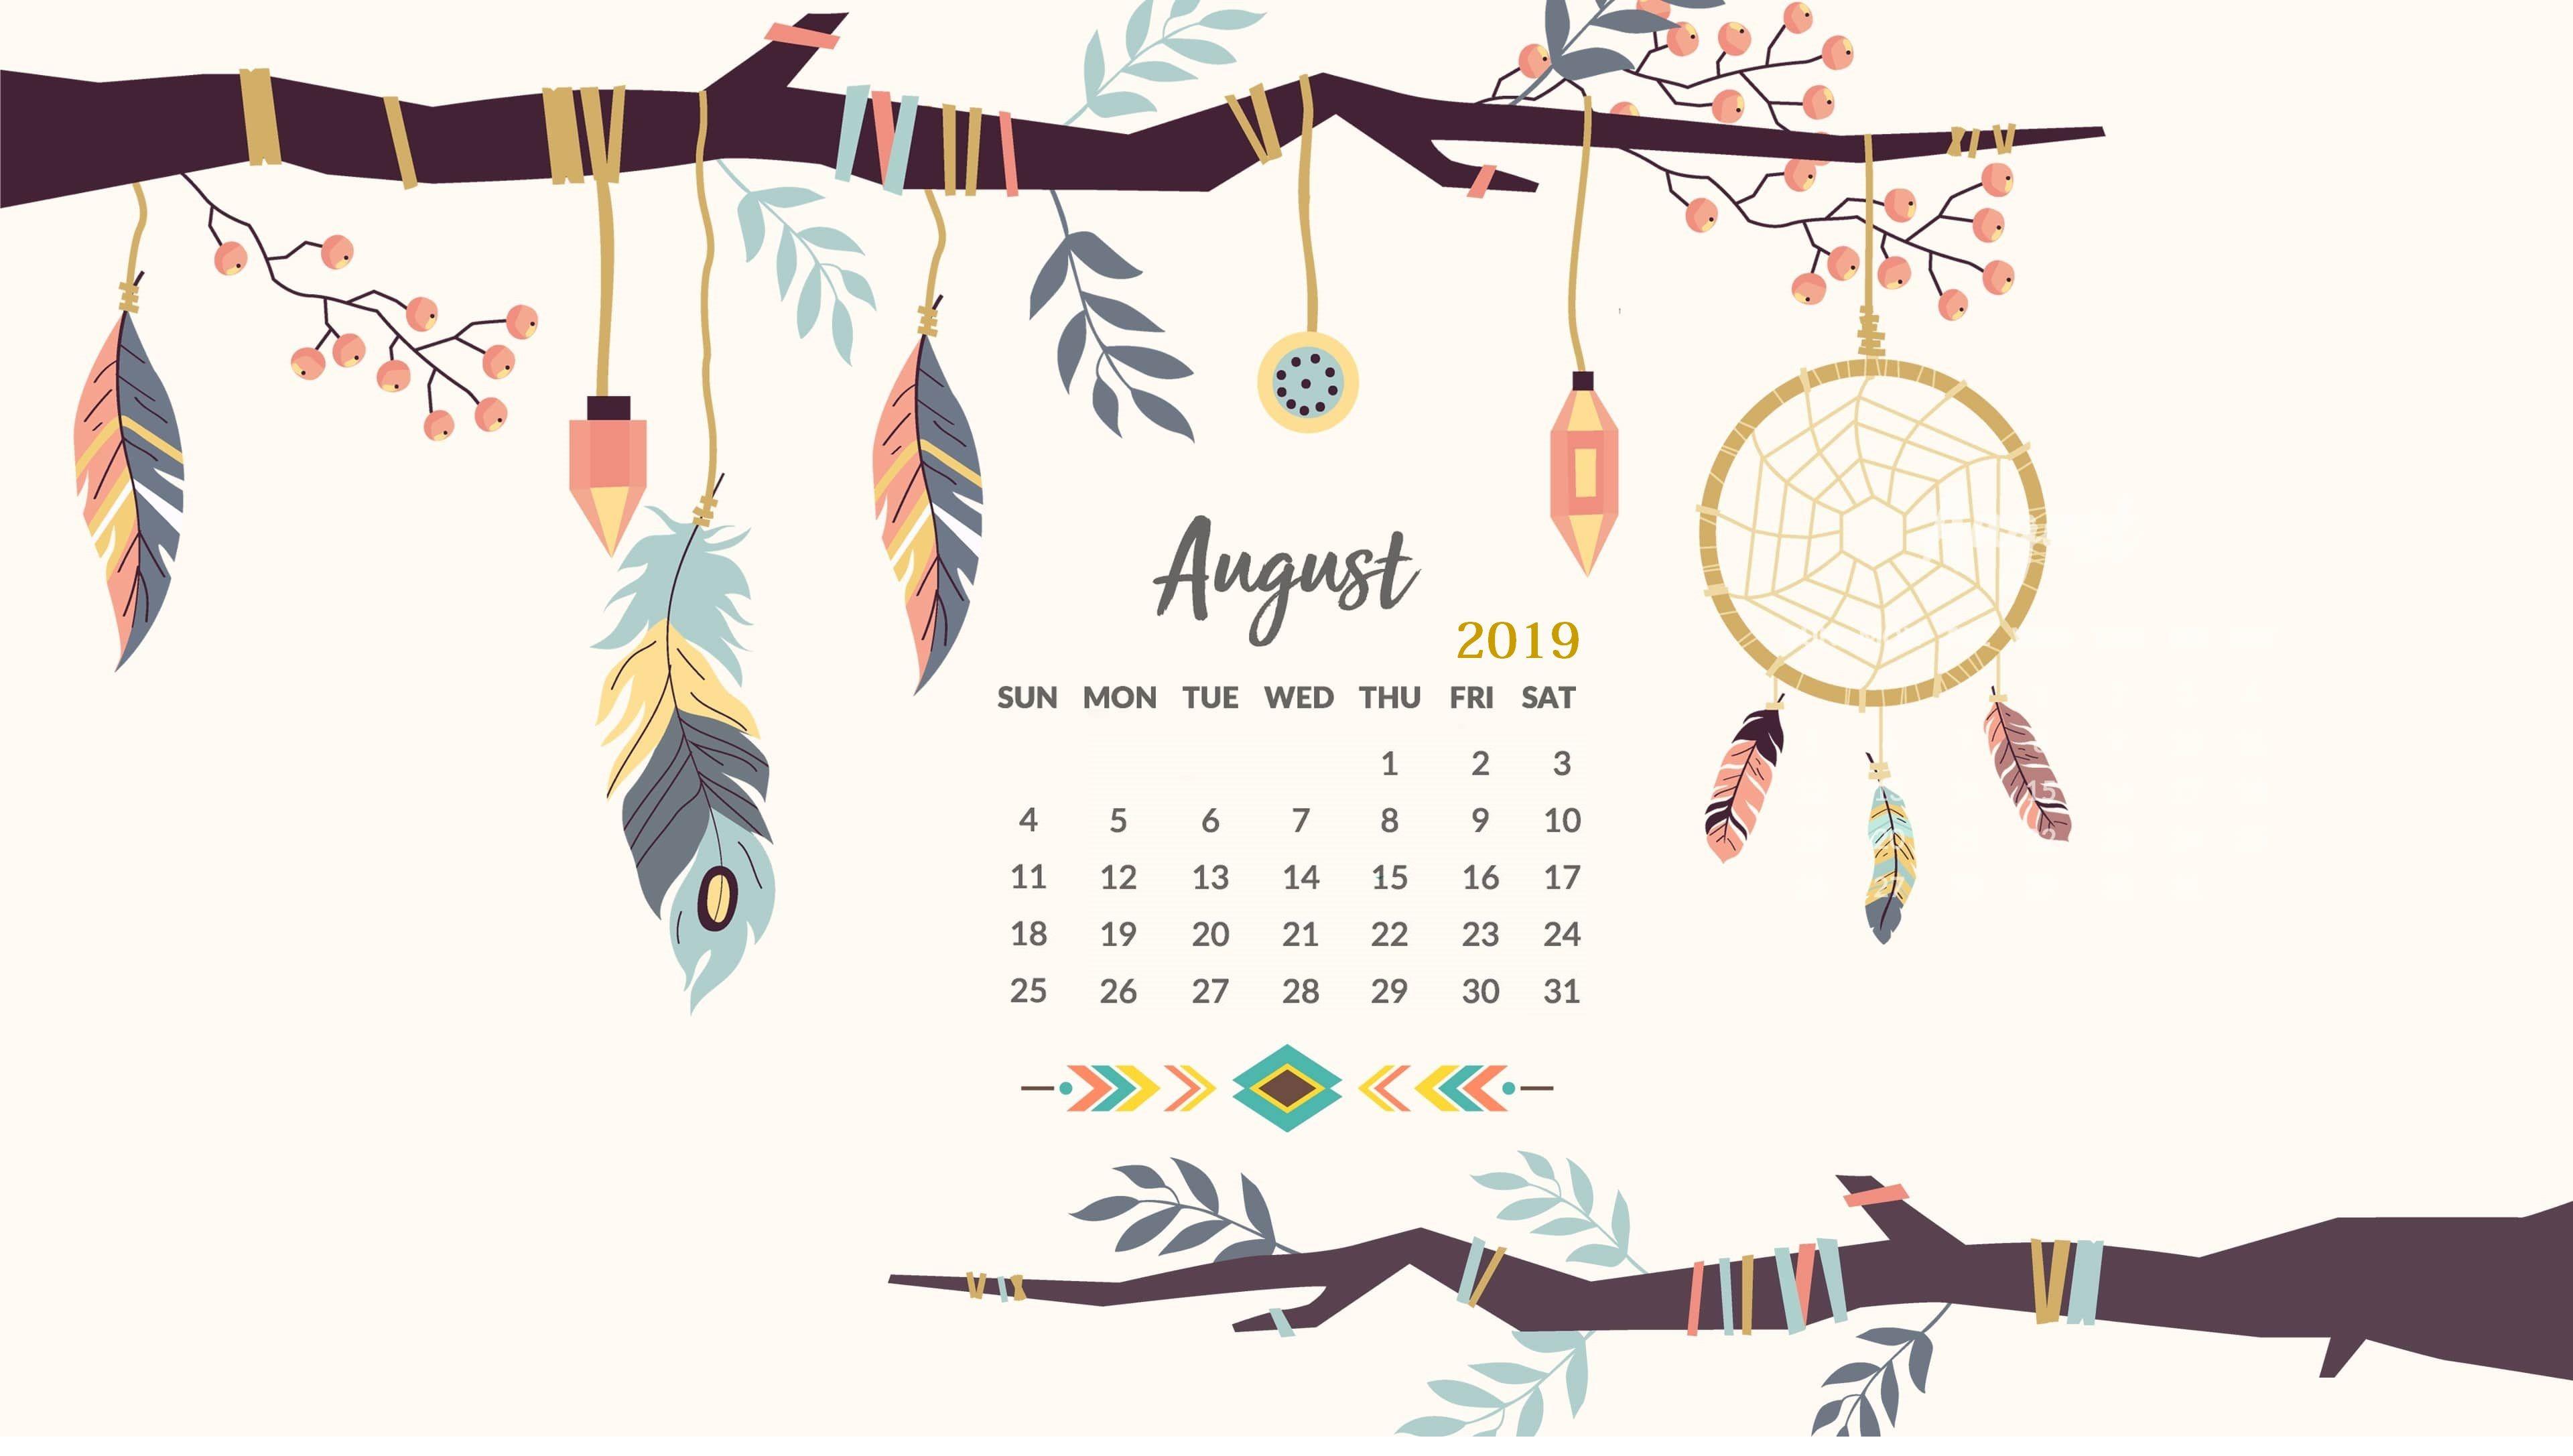 August 2019 HD Calendar Wallpaper. Wall Calendar. Calendar